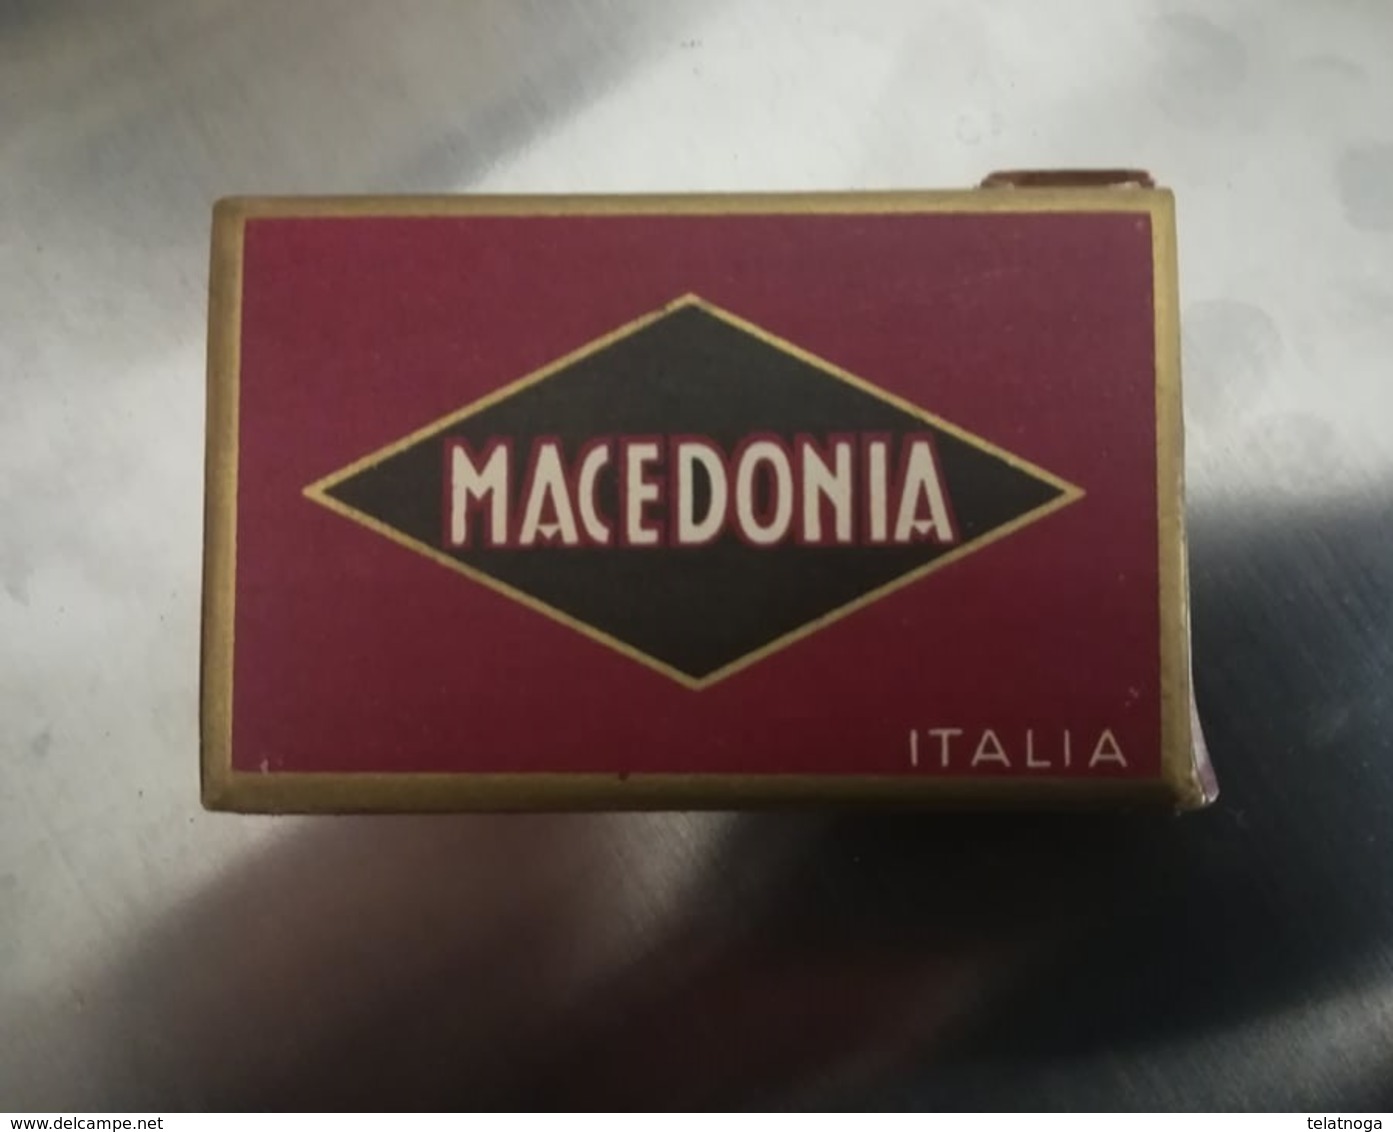 SCATOLINA SIGARETTE "MACEDONIA ITALIA" PRODOTTA IN GERMANIA SU LICENZA MONOPOLIO ITALIANO 1934 - Schnupftabakdosen (leer)